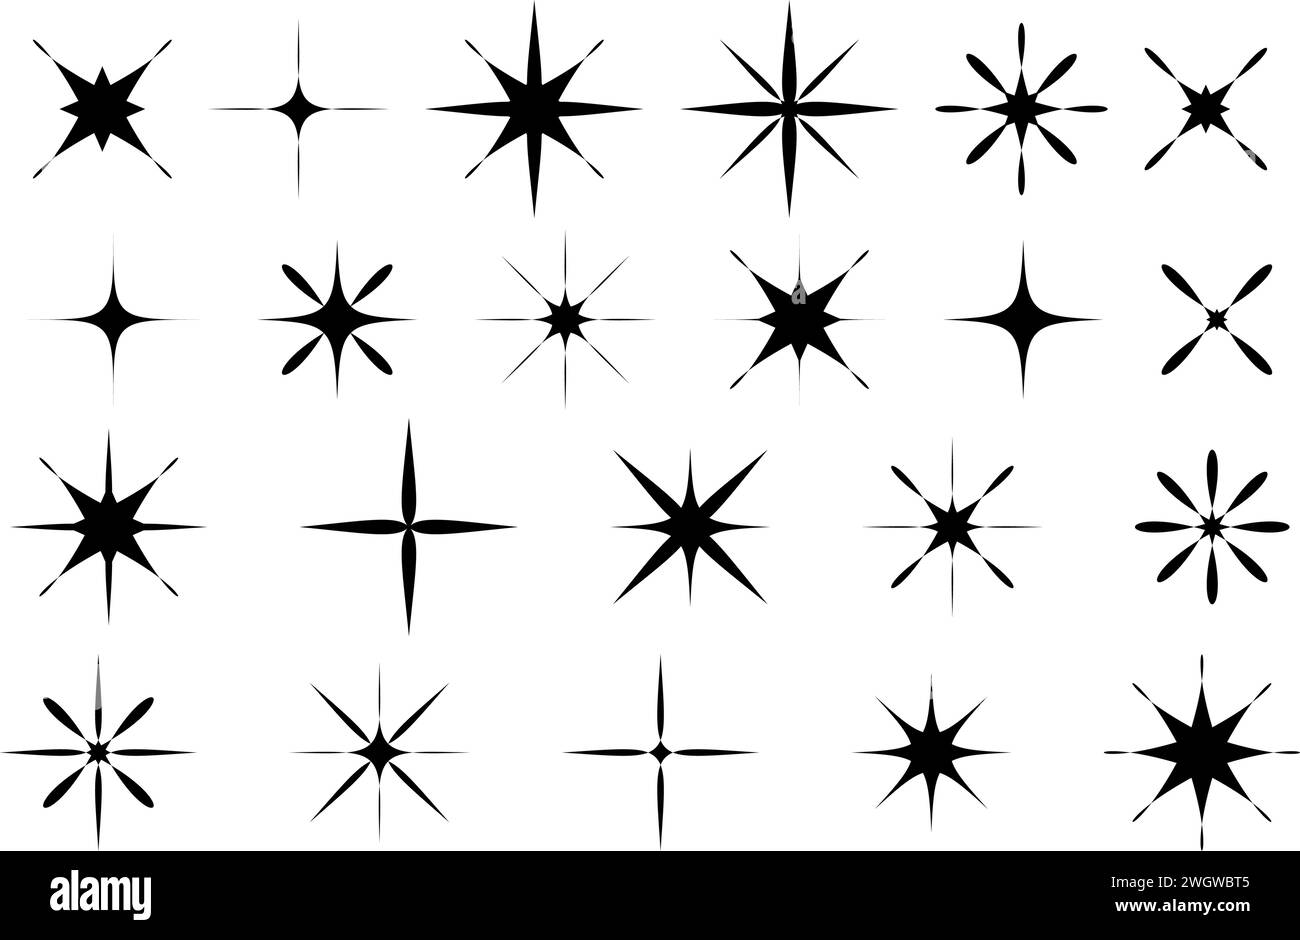 Ensemble d'étoiles Y2K dans un style plat pour un design rétro. Collection de silhouettes noires d'étoiles. Signes et symboles esthétiques vintage années 80, années 90 Vecteur illust Illustration de Vecteur